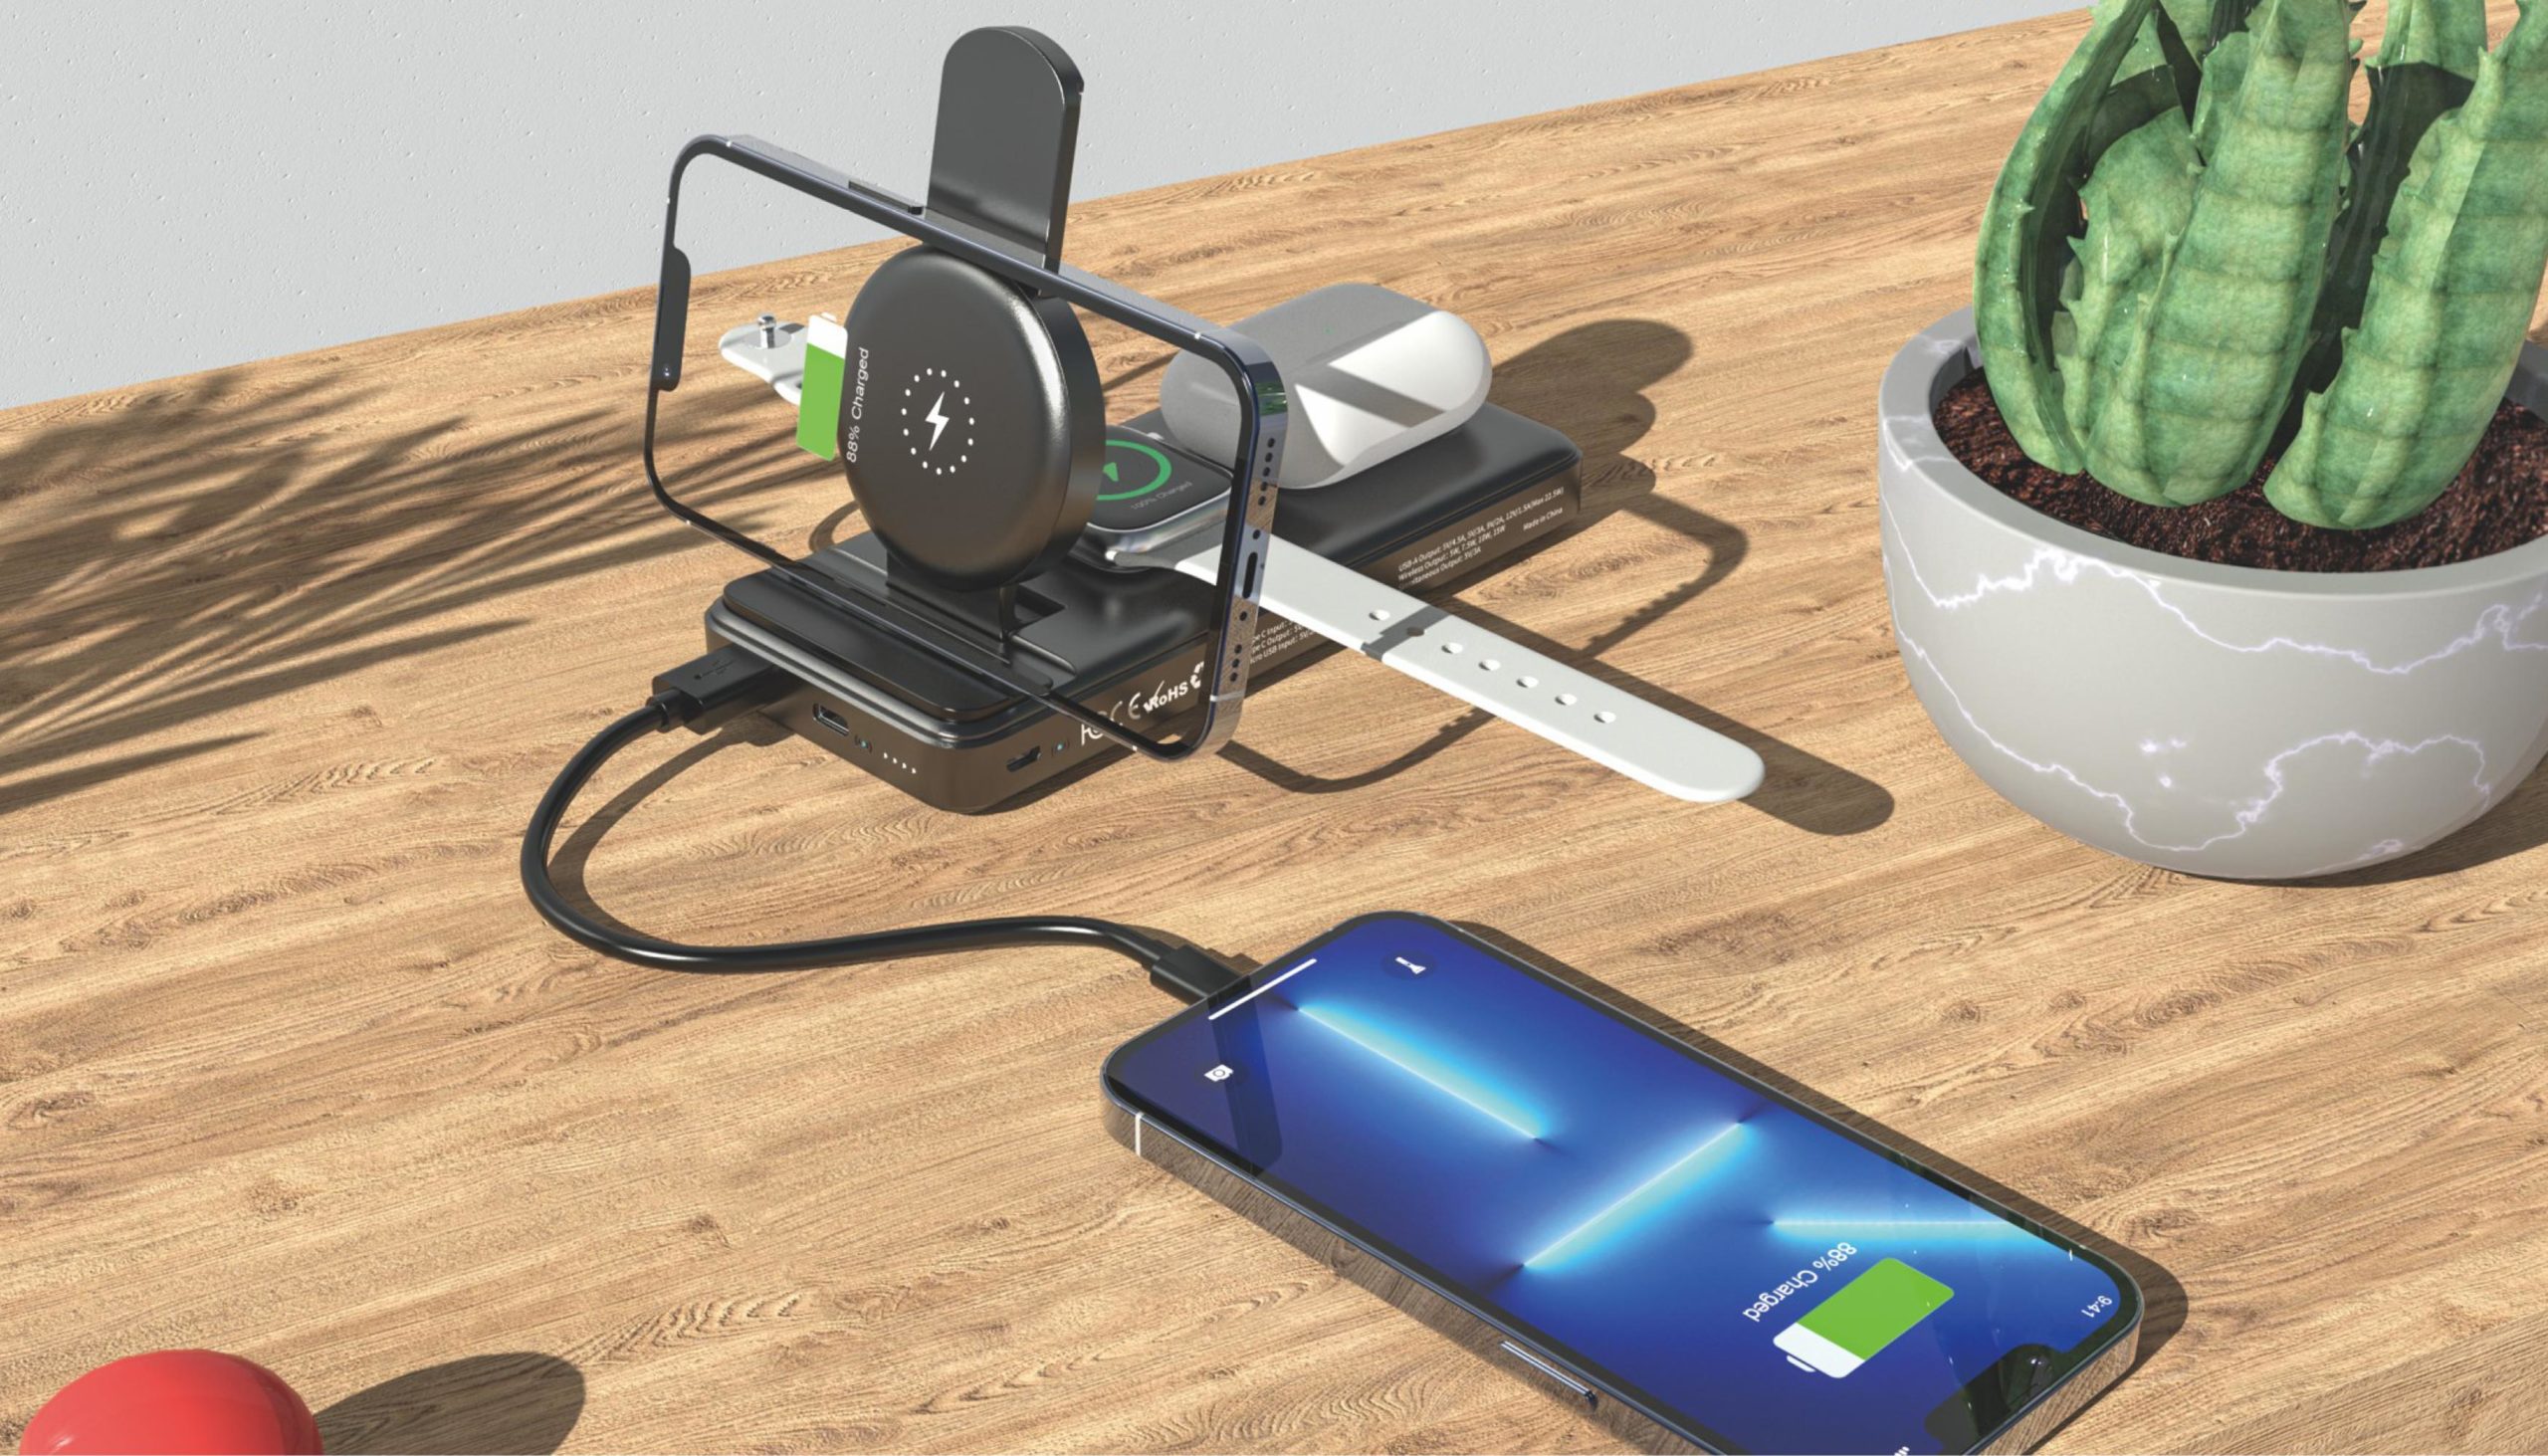 Беспроводная зарядная (20W/15W) станция-пауэрбэнк "Slider" 10000 mAh для смартфонов, наушников, часов, с подвижным зарядным блоком, цвет черный, фото 4